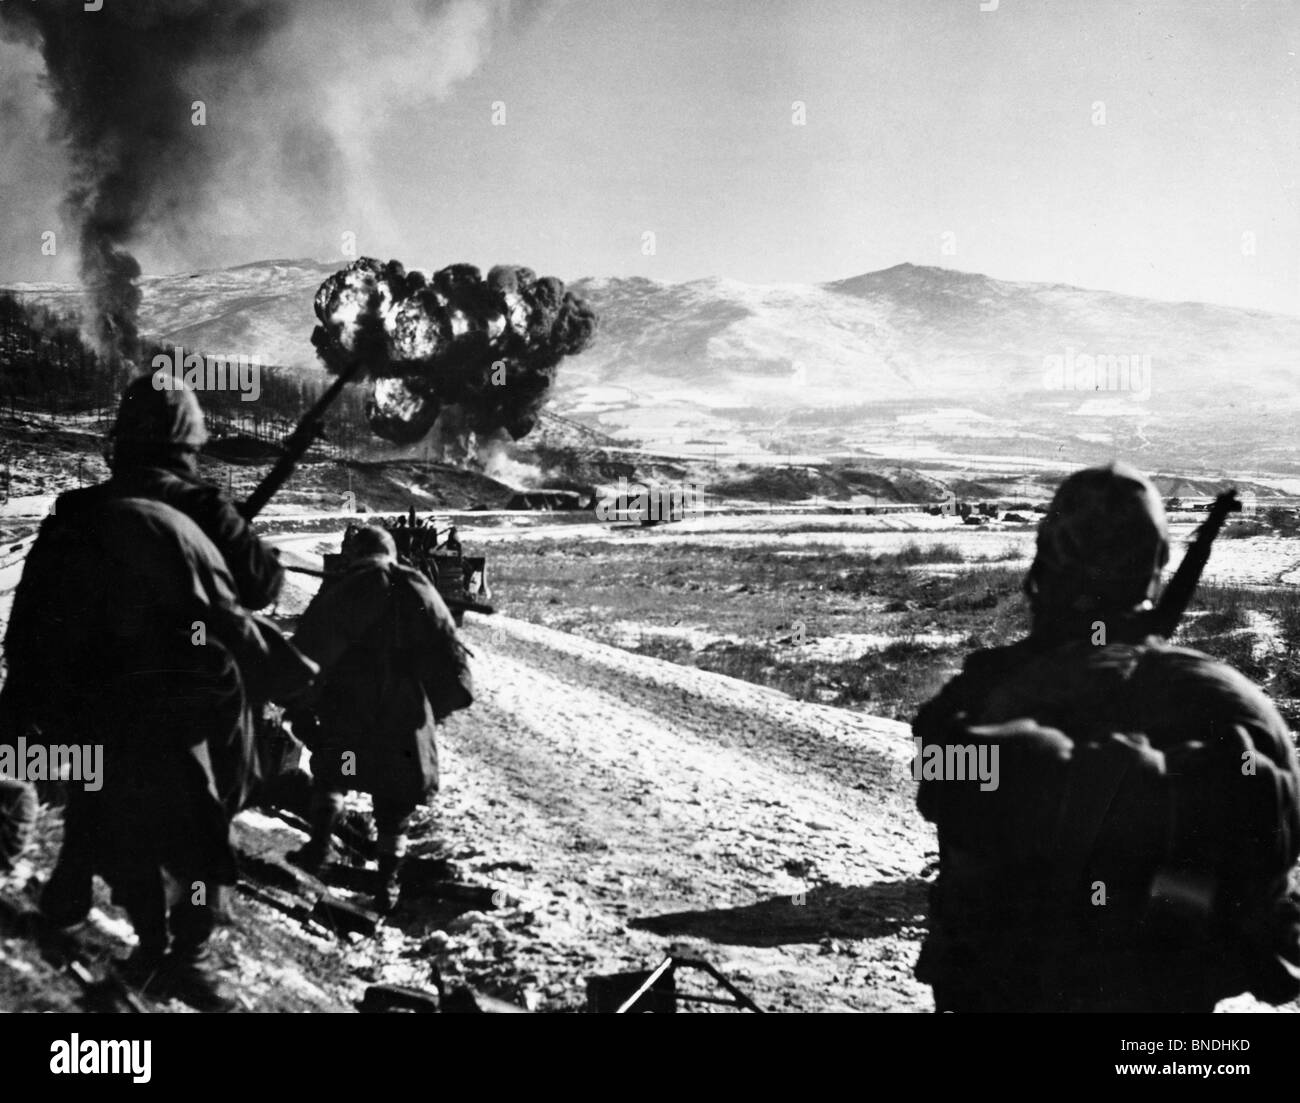 Soldados del ejército en un campo de batalla durante la guerra, la guerra de Corea Foto de stock